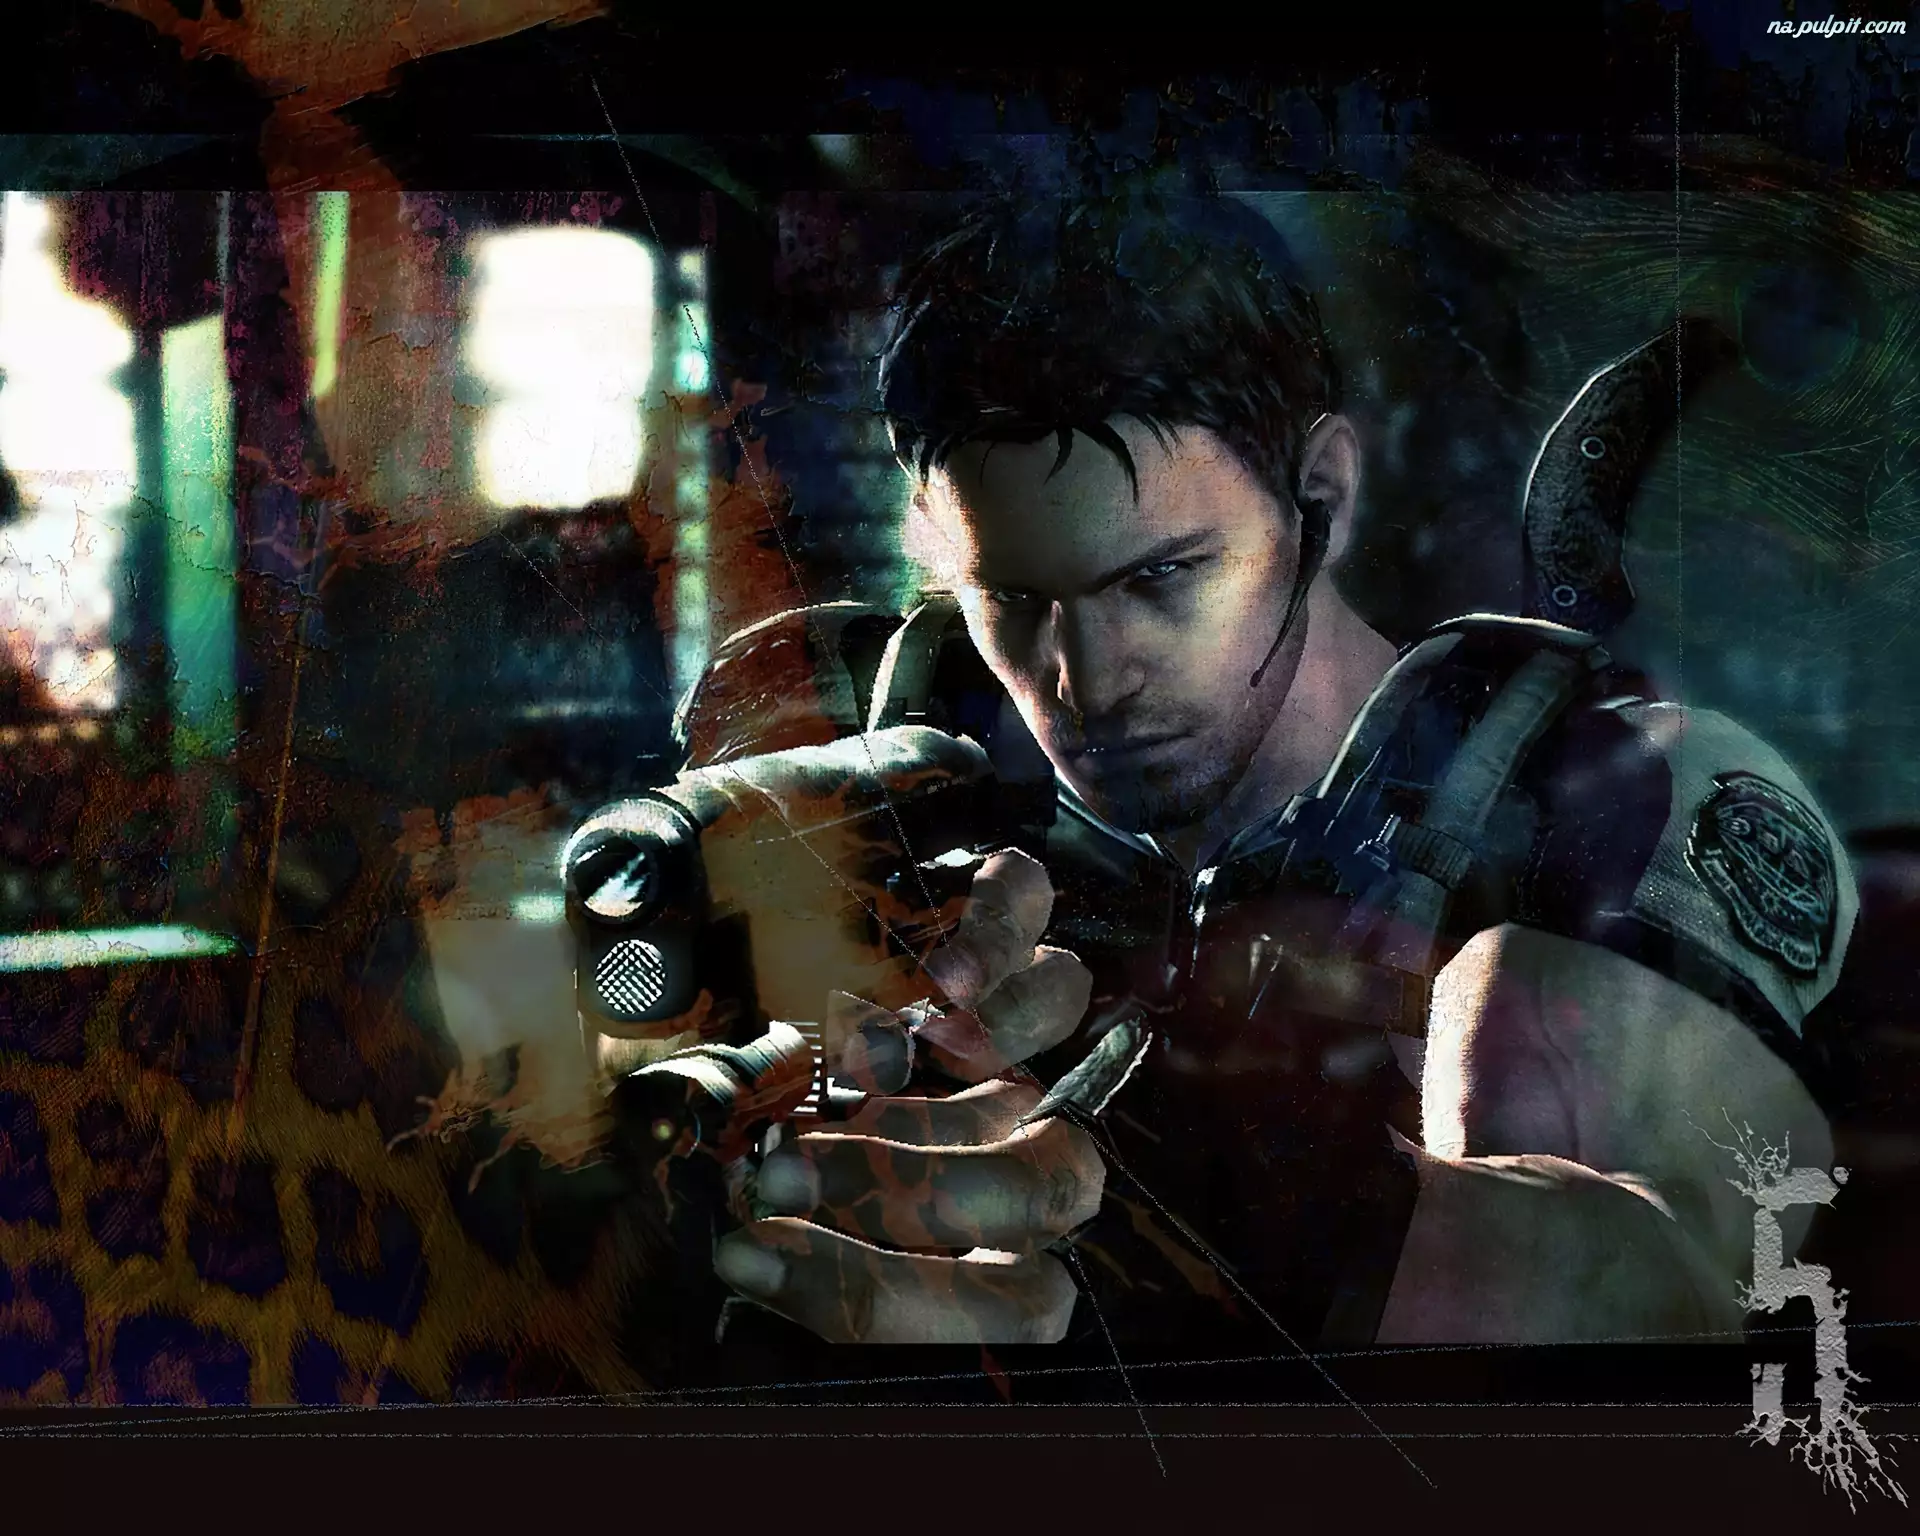 Pistolet, Resident Evil 5